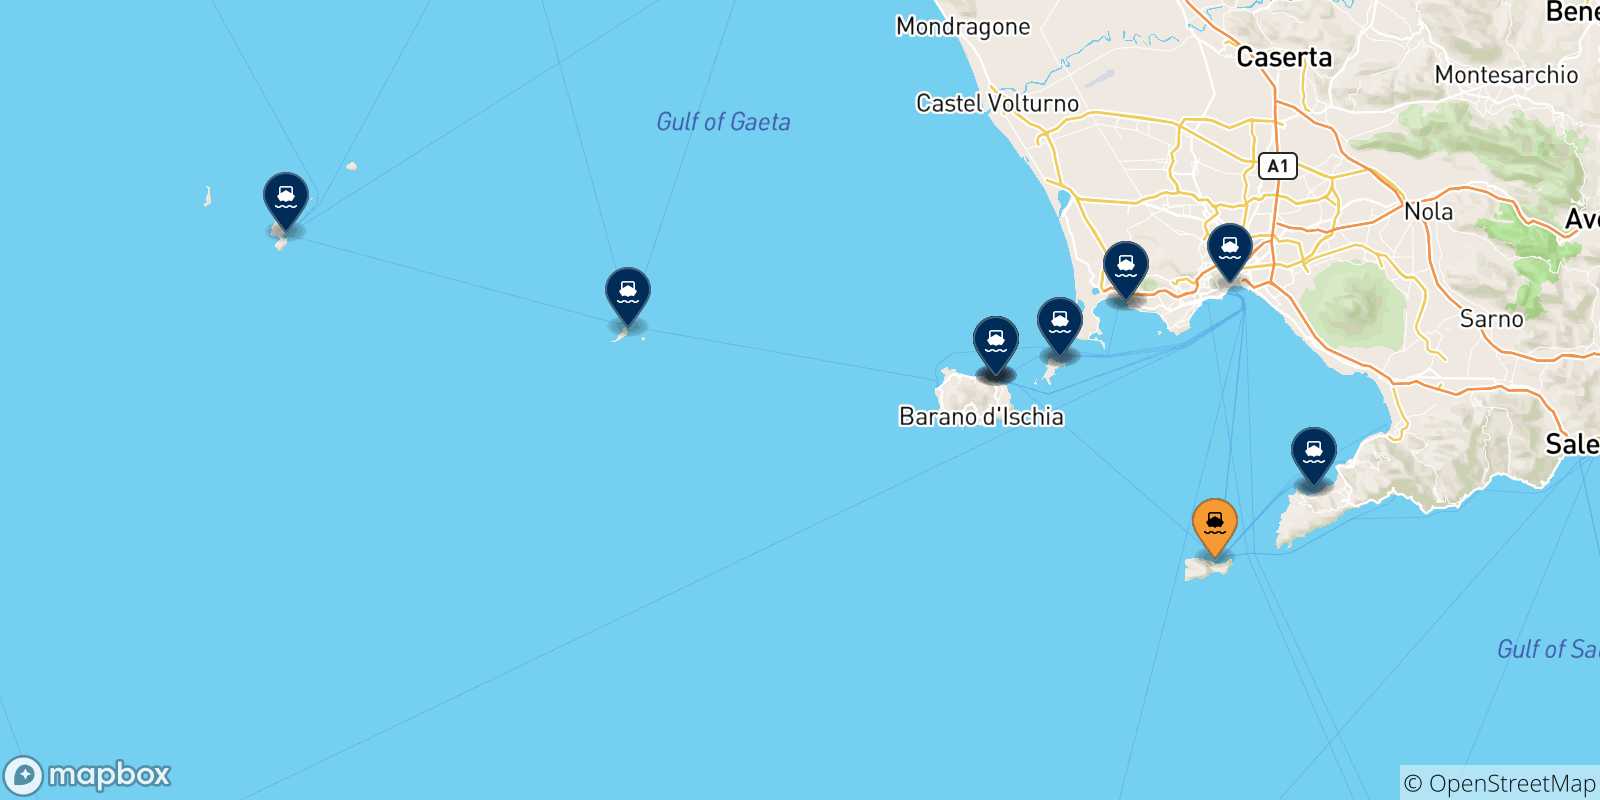 Mappa delle destinazioni raggiungibili dal Golfo Di Napoli